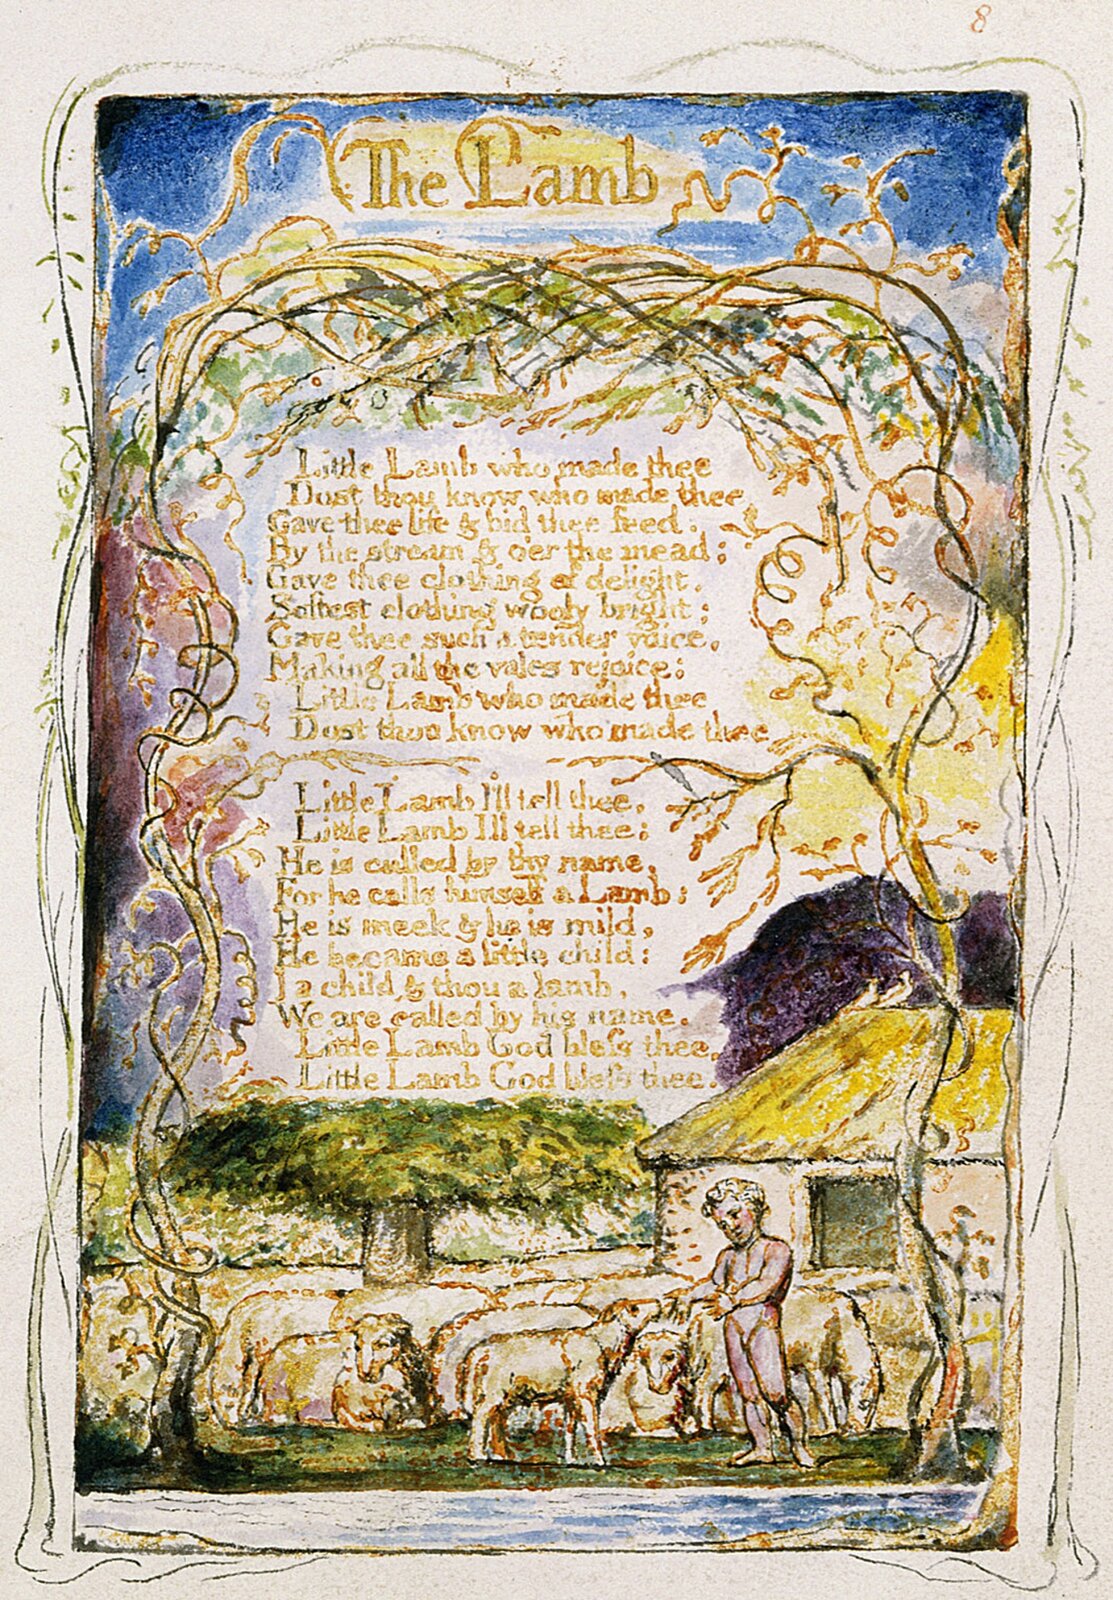 Ilustracja o kształcie pionowego prostokąta przedstawia ilustrację do wiersza „Owca” z „Pieśni niewinności” Wiliama Blake’a. Ukazuje tekst otoczony motywami rysunkowymi. U dołu znajduje się  pasterz w towarzystwie owiec. Obok stoi dom kryty strzechą. Po obu stronach rosną drzewa, których korony otaczają cały tekst, splatając się u góry. Tłem jest błękitne niebo.